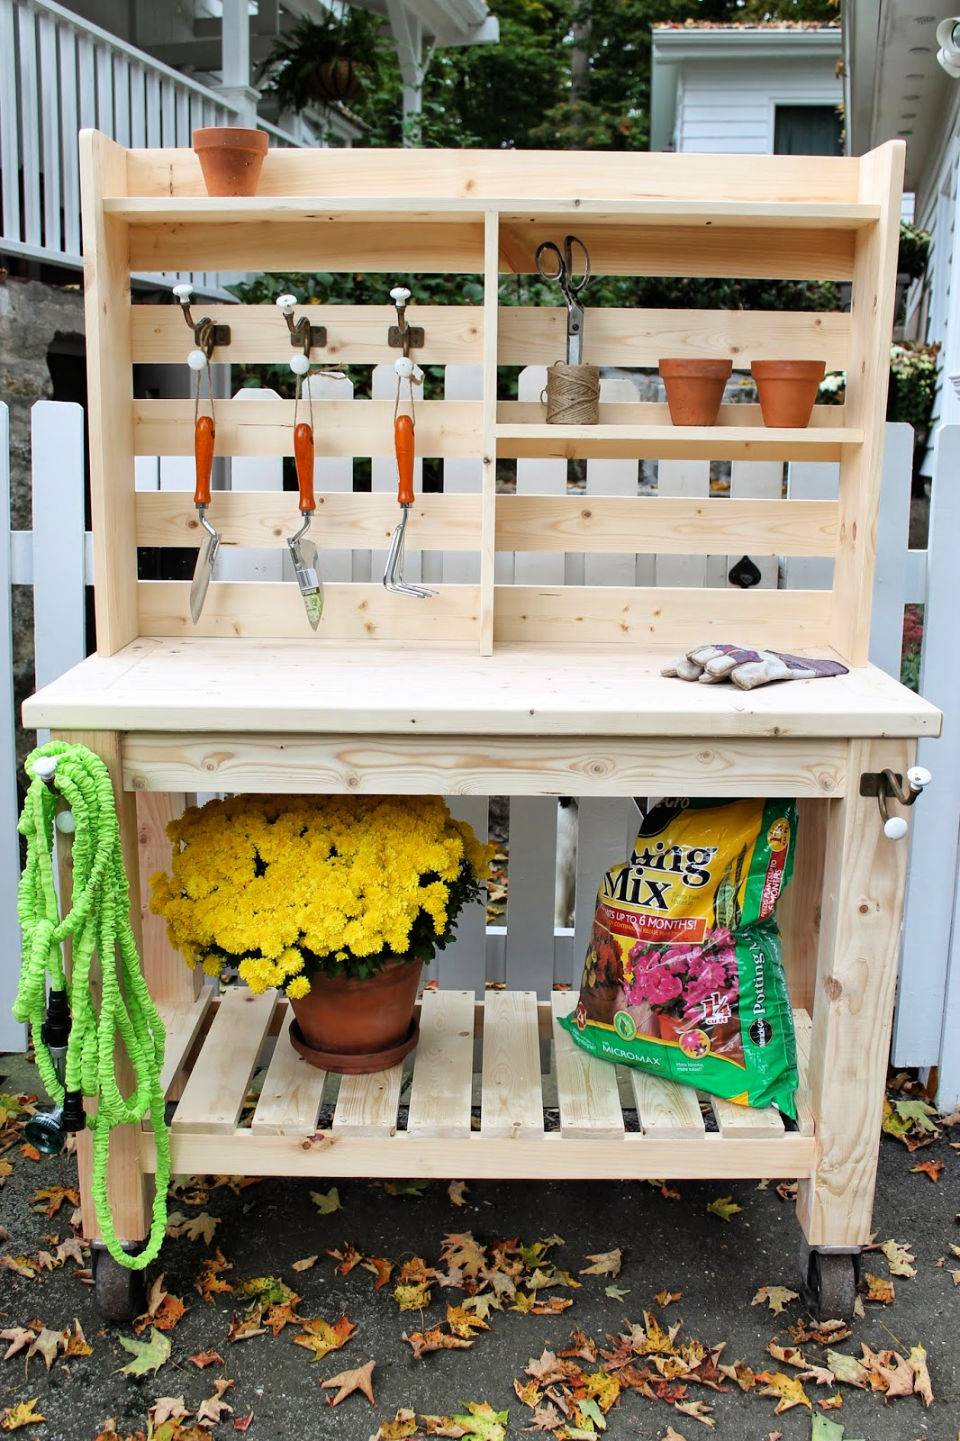 Outdoor Garden Potting Bench Design Ideas